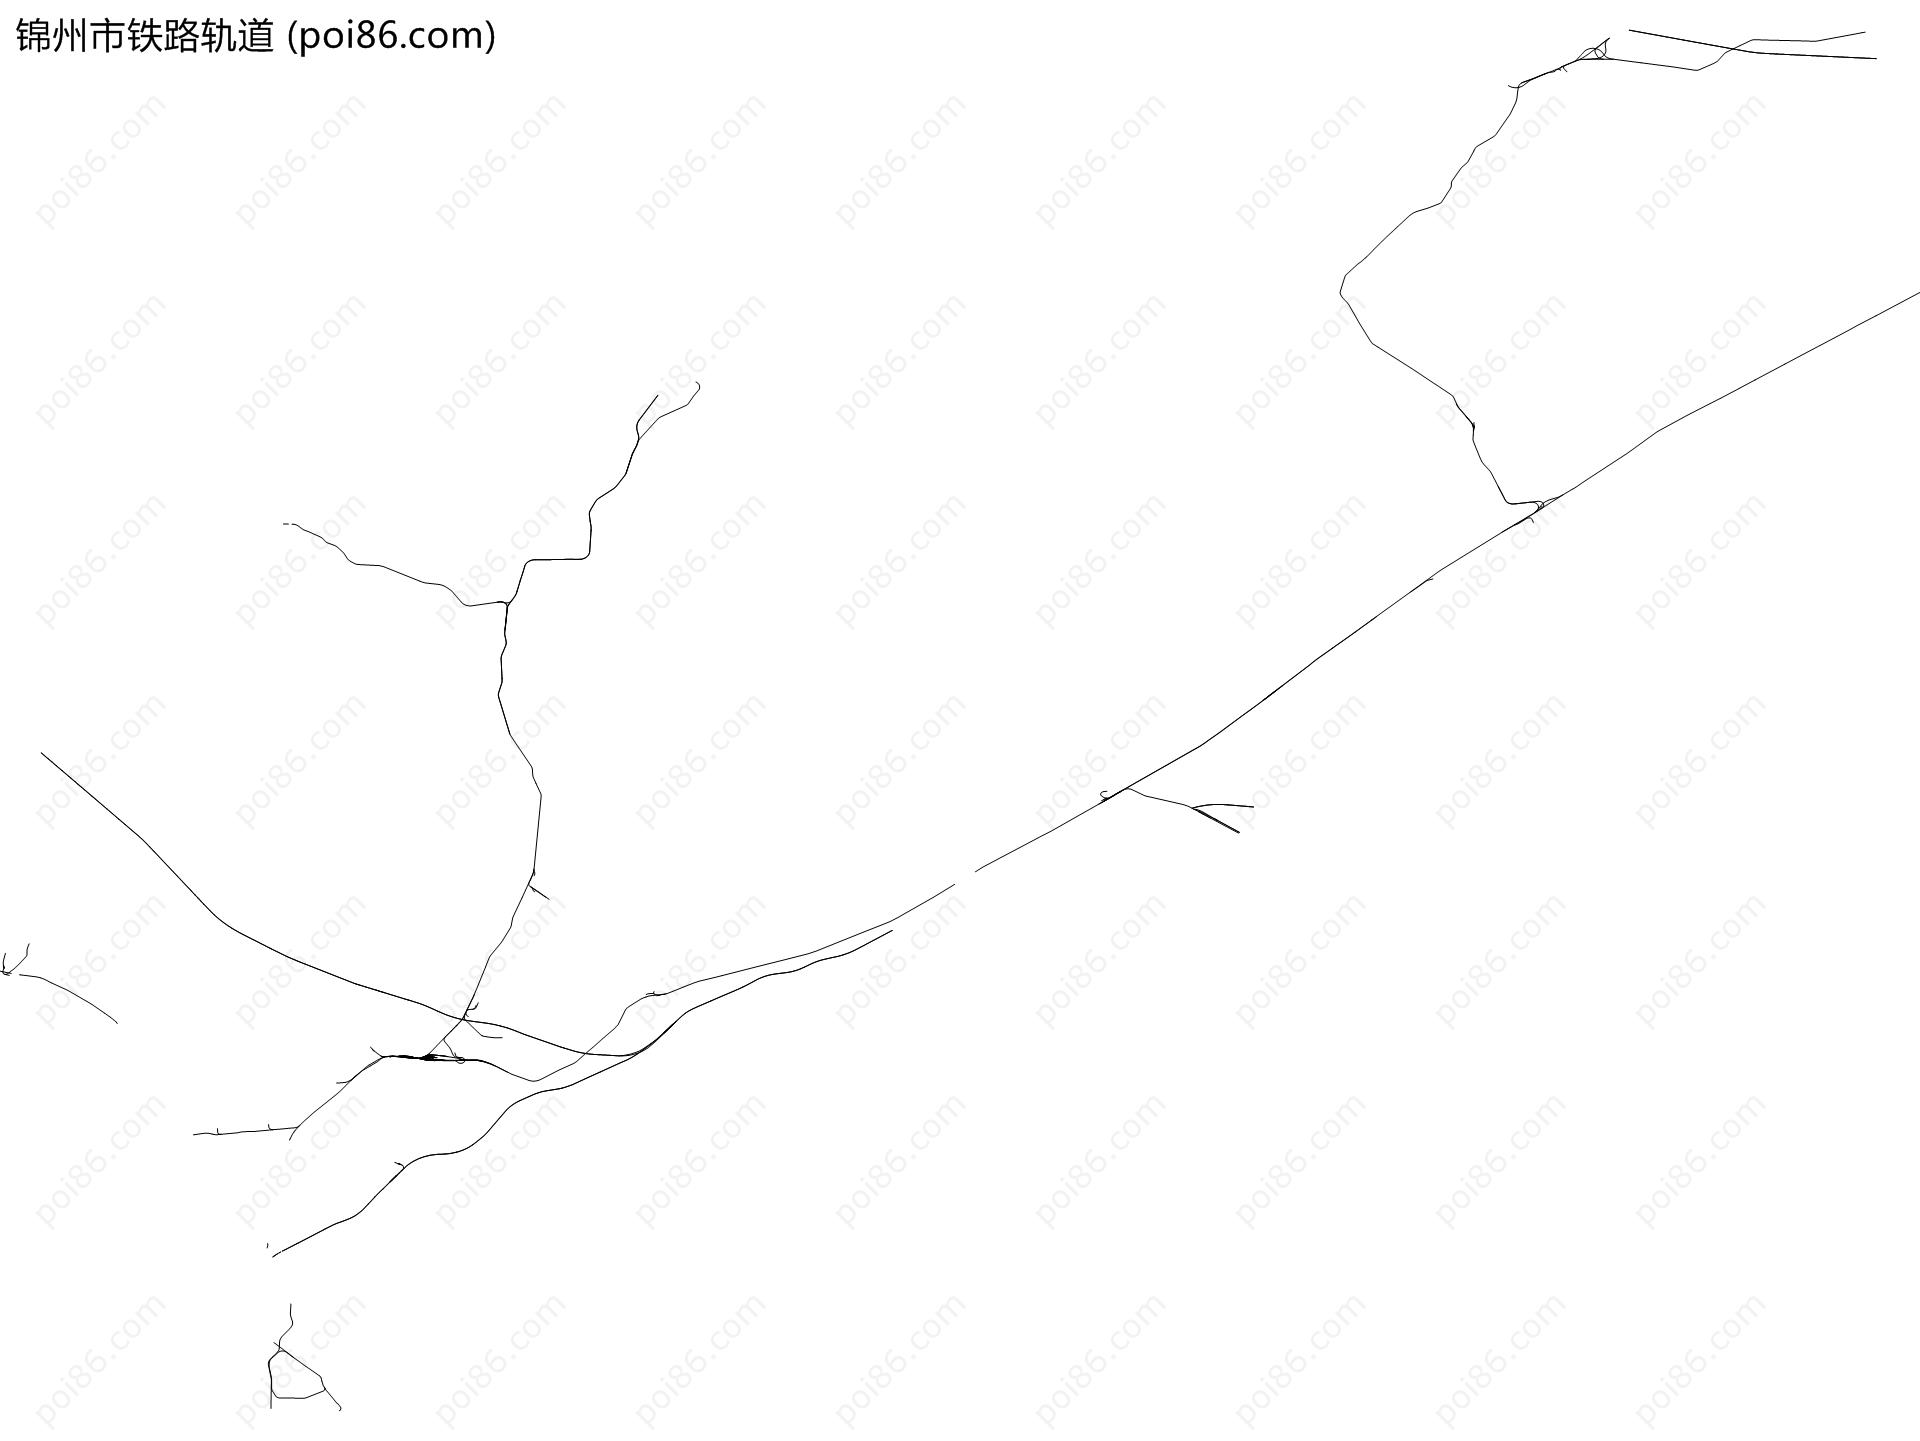 锦州市铁路轨道地图